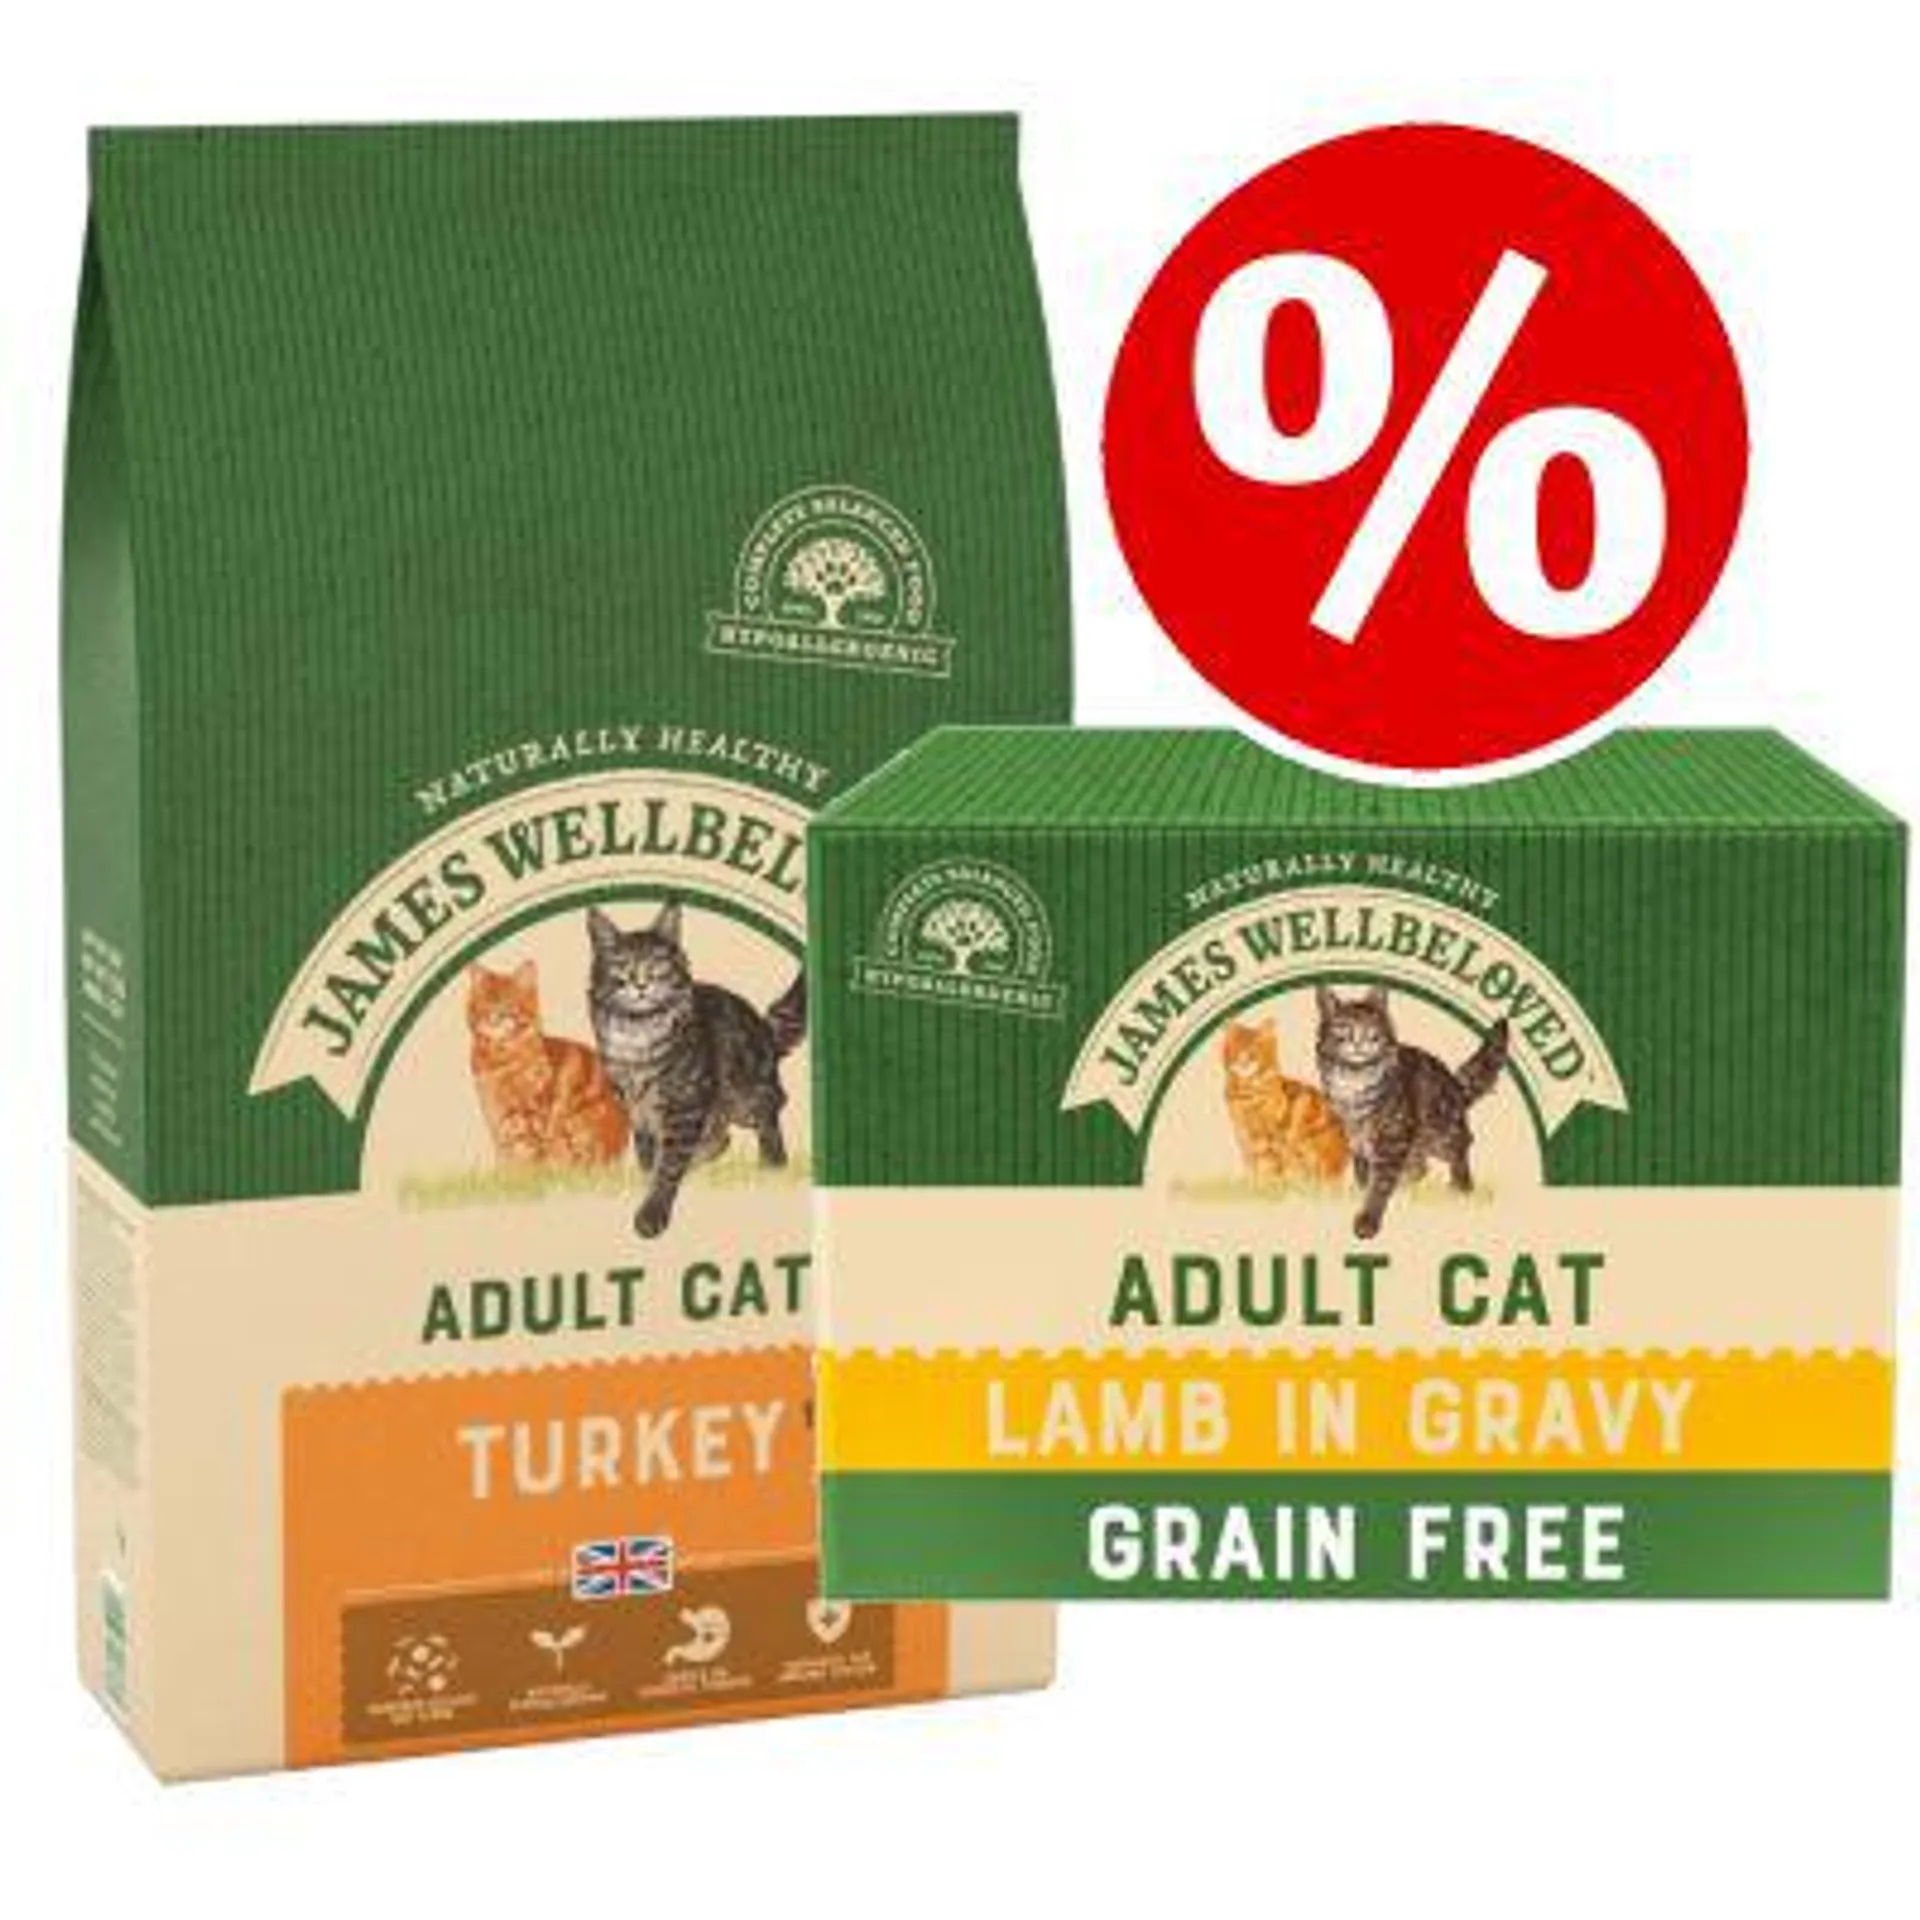 10kg James Wellbeloved Dry Cat Food + Lamb Wet Food - 15% Off!*